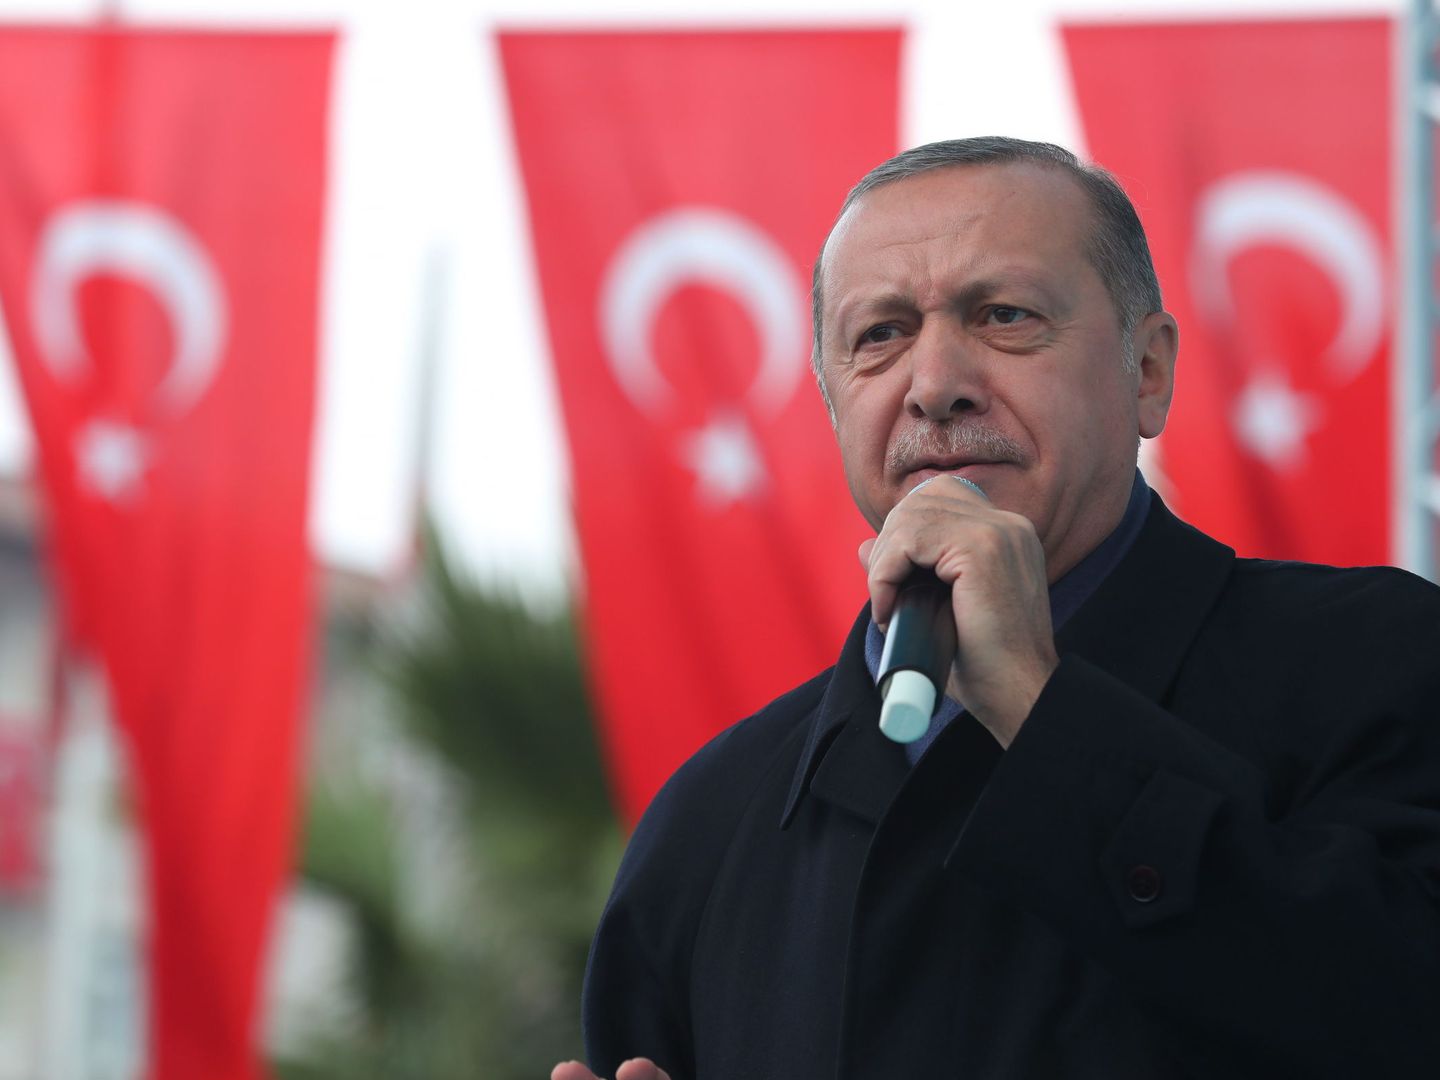 El presidente turco Recep Tayyip Erdogan durante un acto público en Estambul. (Reuters)